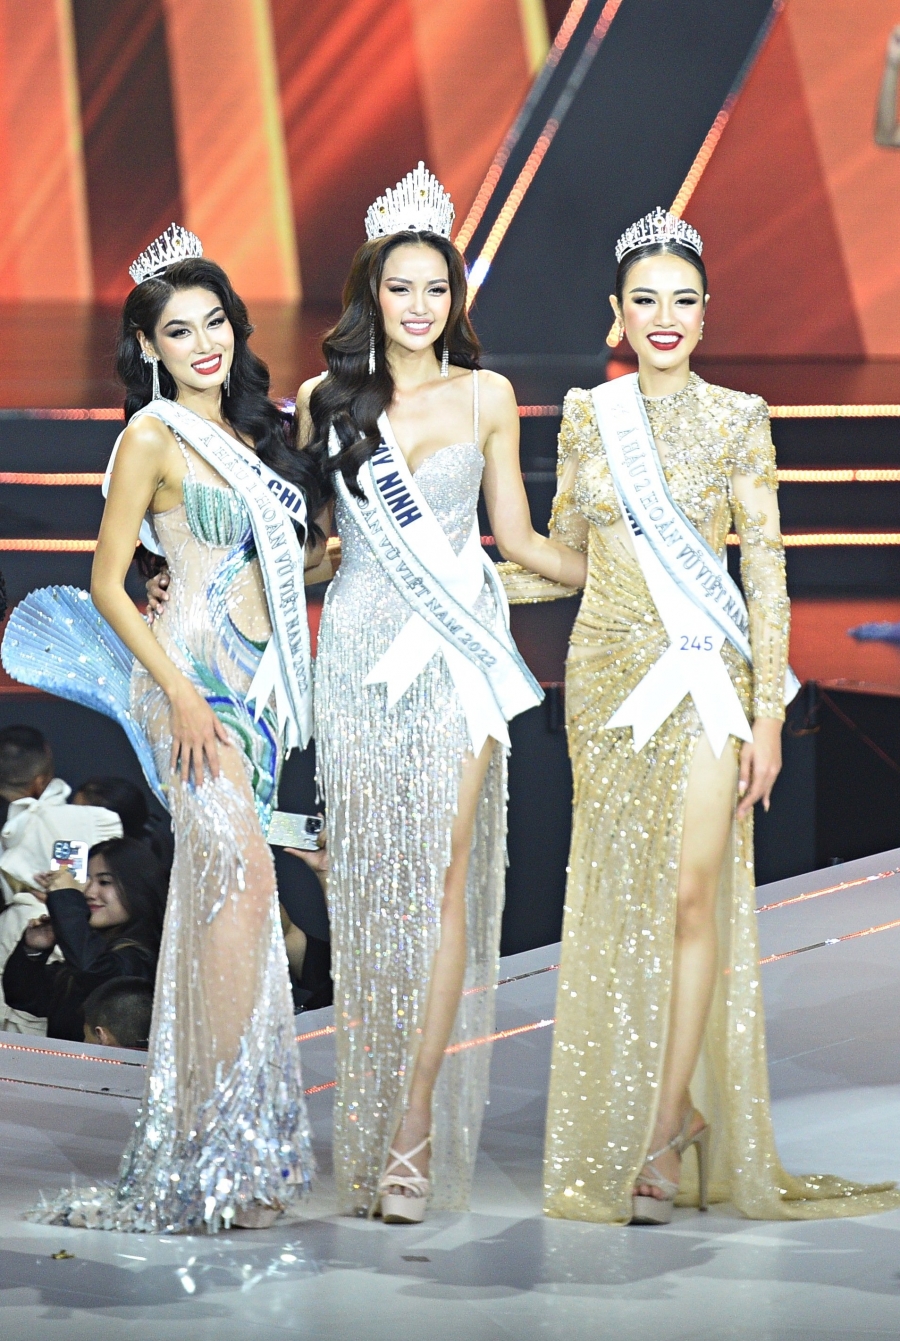 Cuộc thi Miss Universe Vietnam - Hoa hậu Hoàn vũ Việt Nam 2022 dù đã kết thúc hơn 10 ngày nhưng đến nay vẫn còn dư âm trong lòng khán giả.